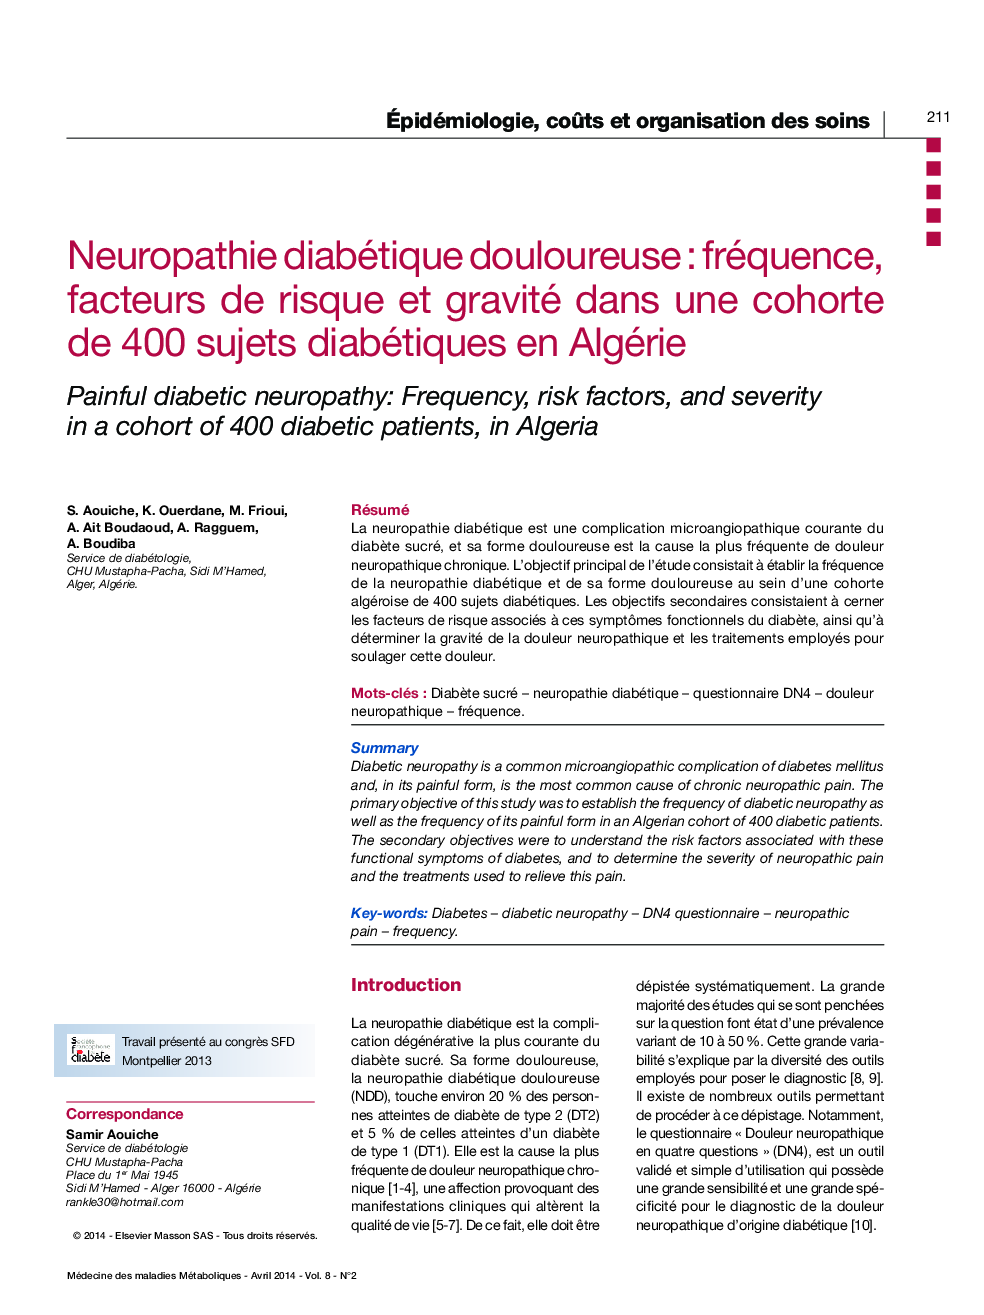 Neuropathie diabétique douloureuse : fréquence, facteurs de risque et gravité dans une cohorte de 400 sujets diabétiques en Algérie